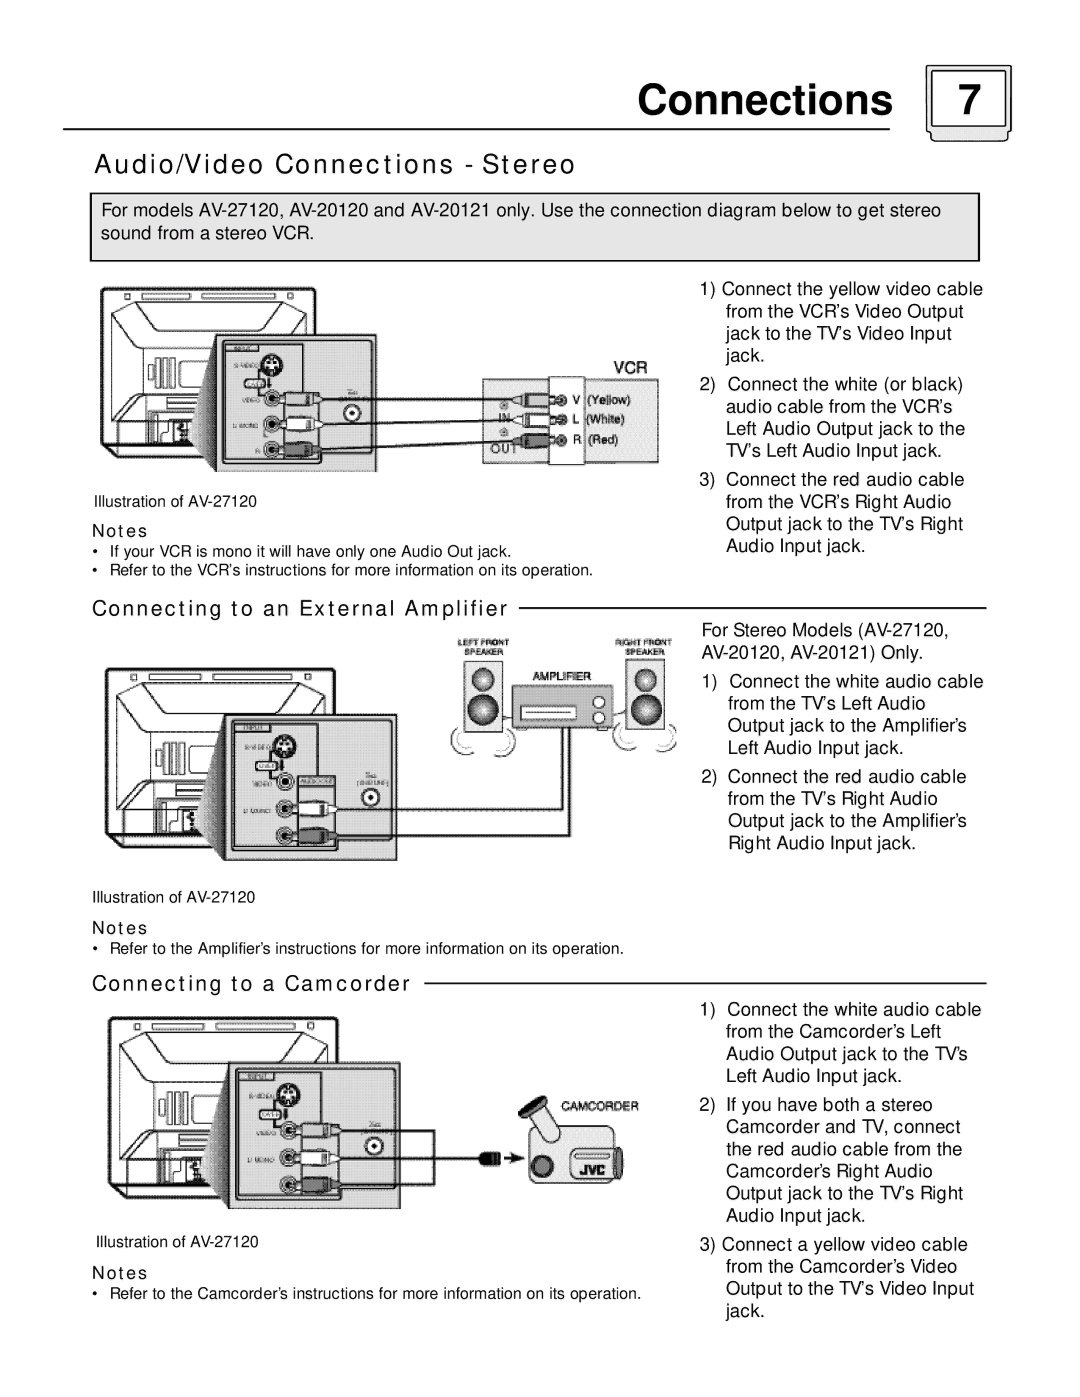 JVC C-13110, AV-27115 manual Audio/Video Connections Stereo, For Stereo Models AV-27120 AV-20120, AV-20121 Only 